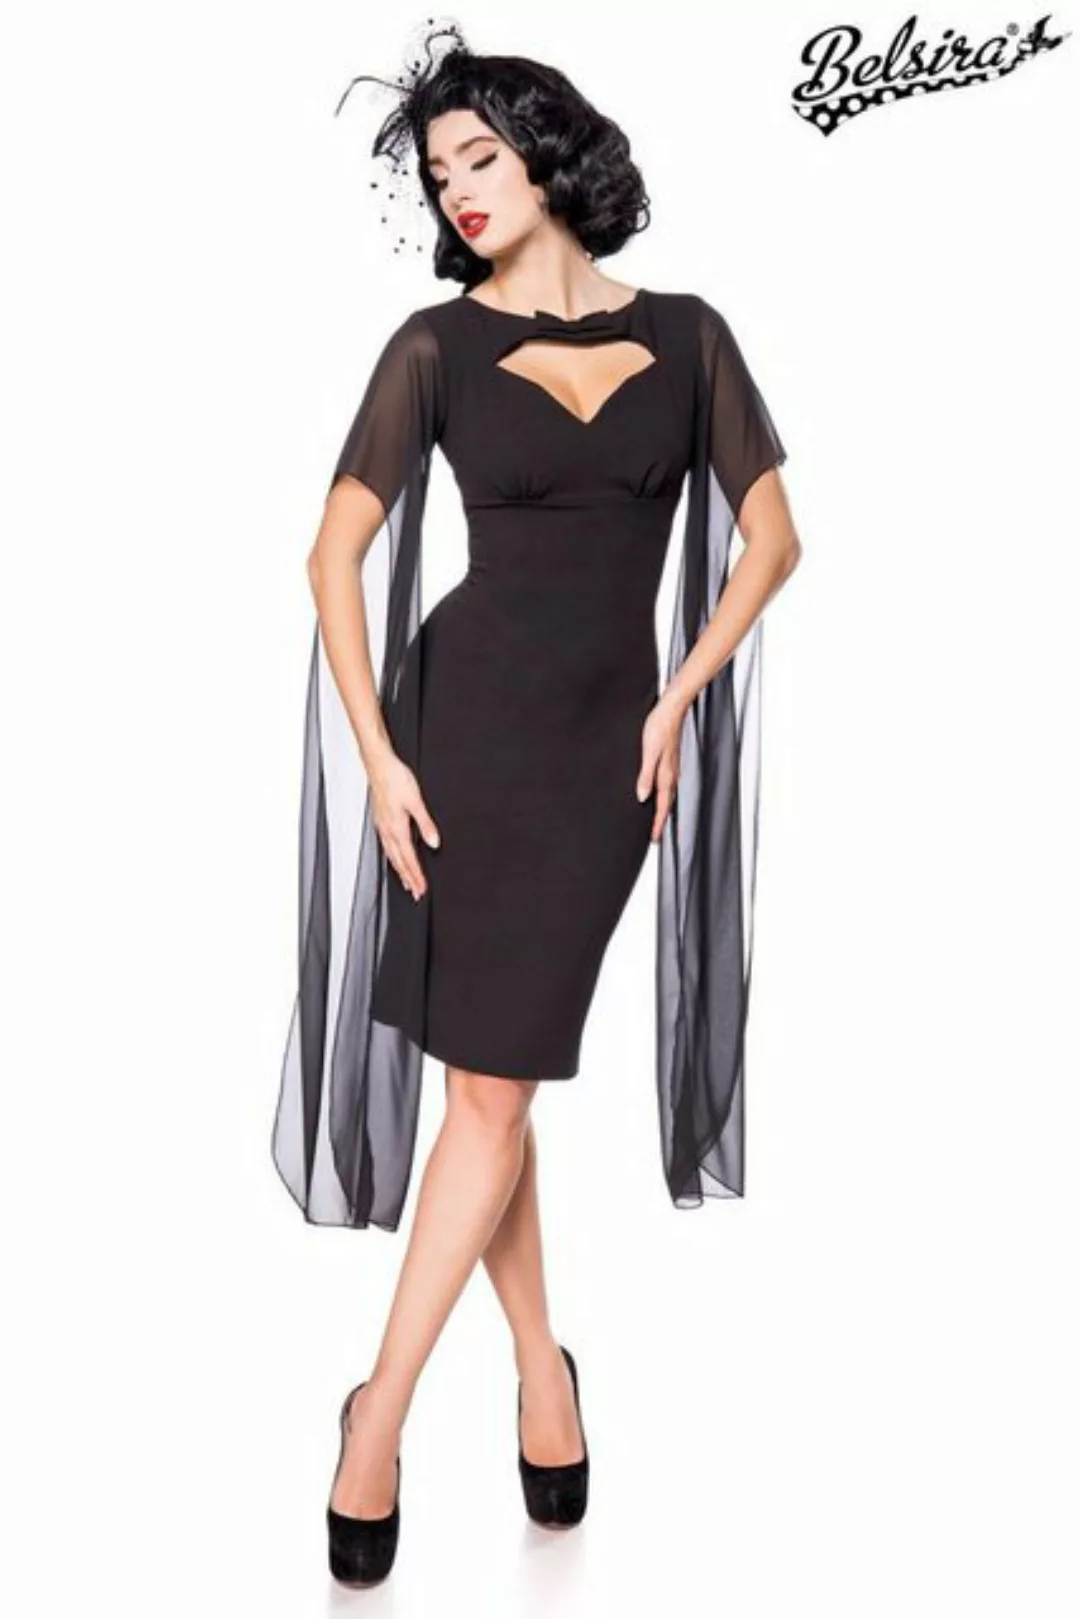 BELSIRA Trachtenkleid Belsira - Retro Kleid - (2XL,3XL,4XL,L,M,S) günstig online kaufen